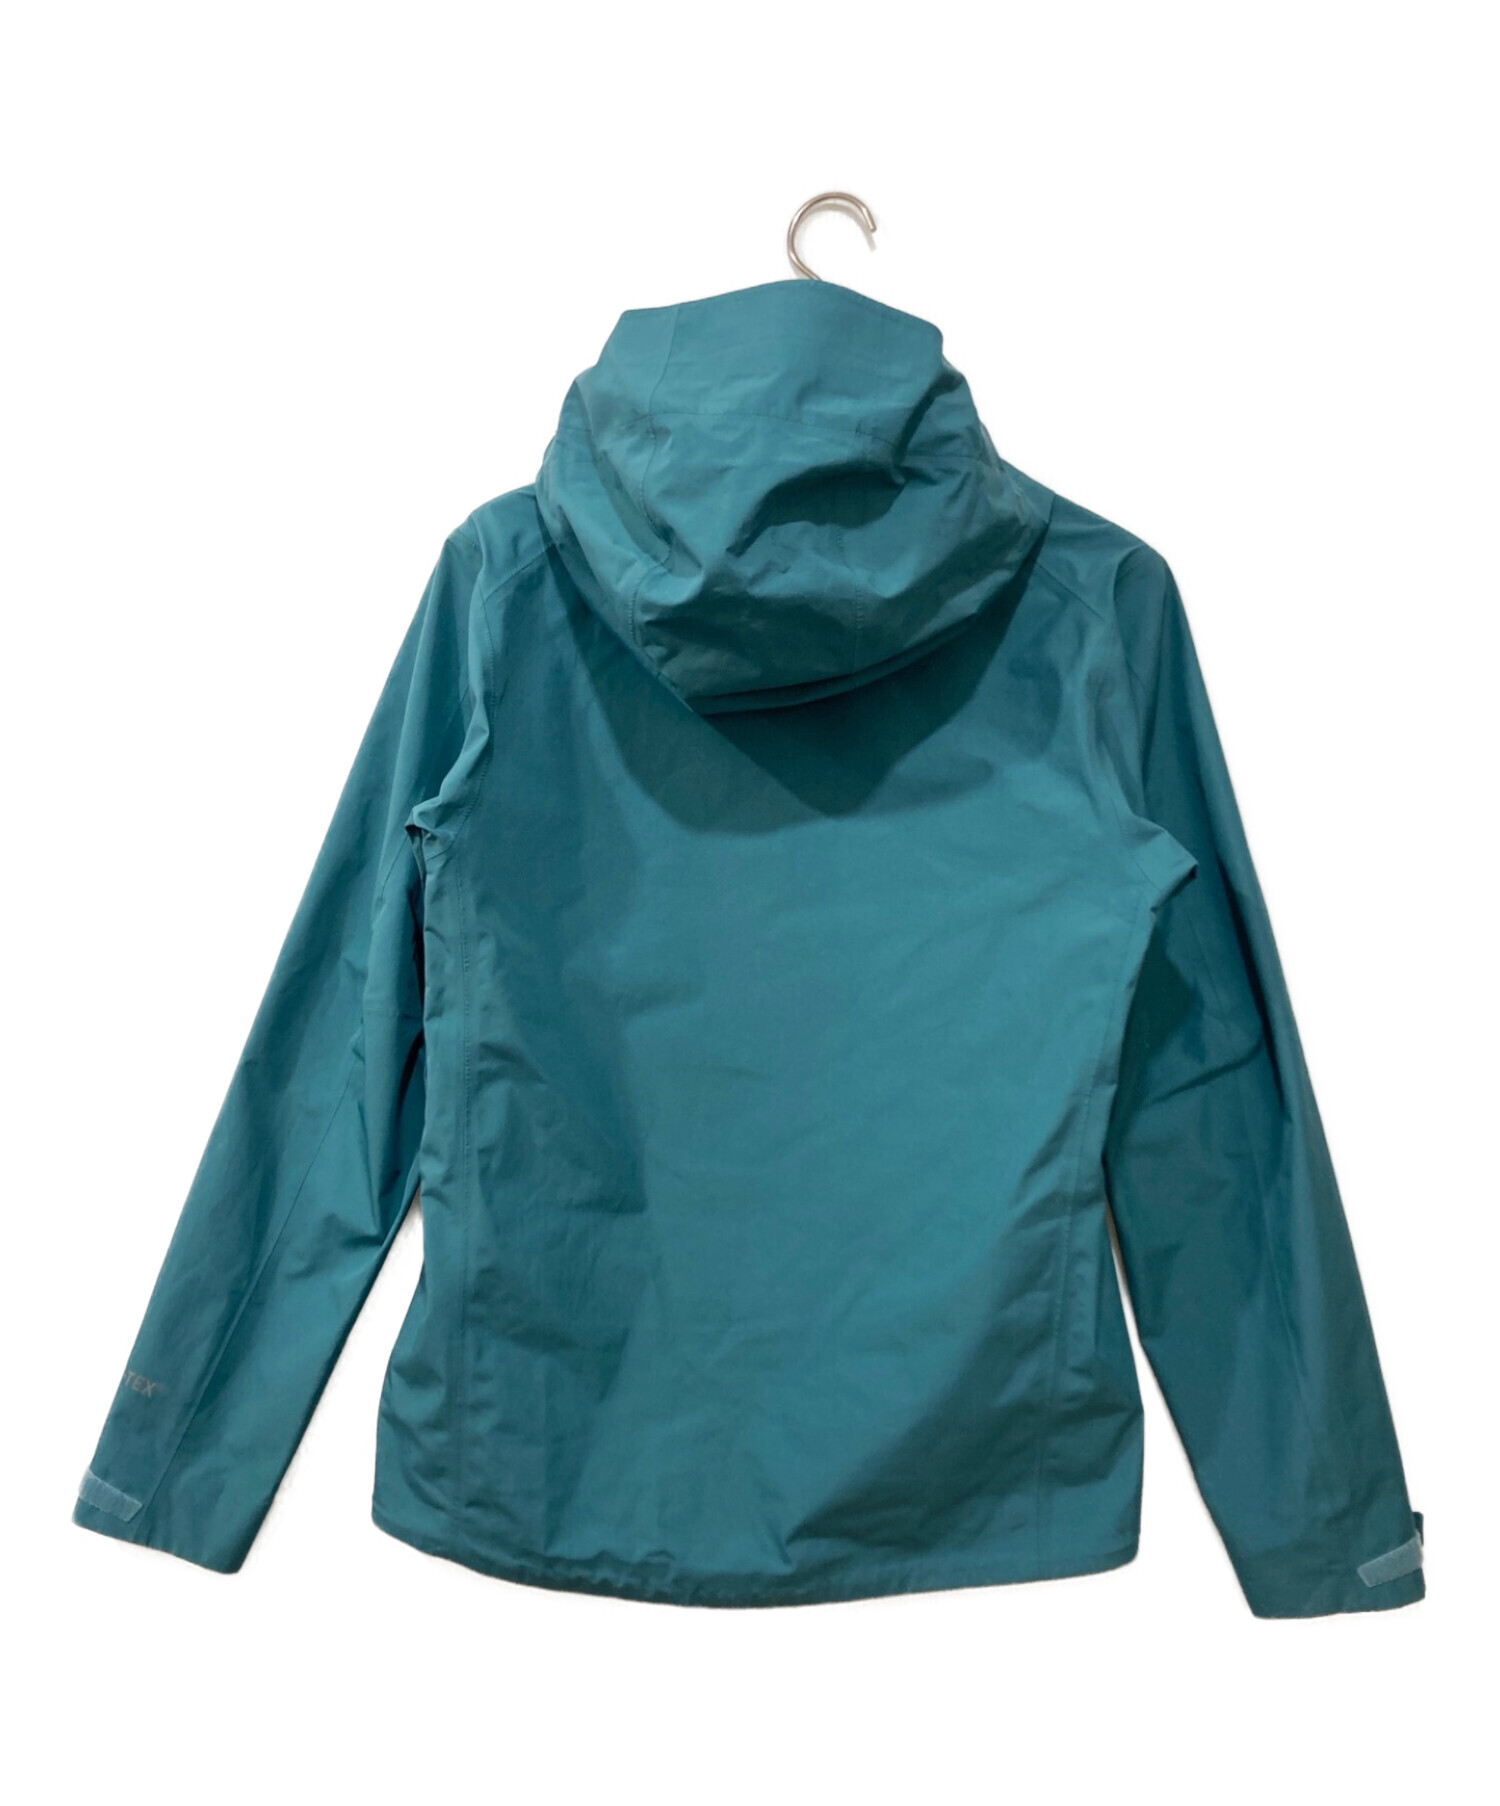 Patagonia (パタゴニア) カルサイトジャケット グリーン サイズ:XS